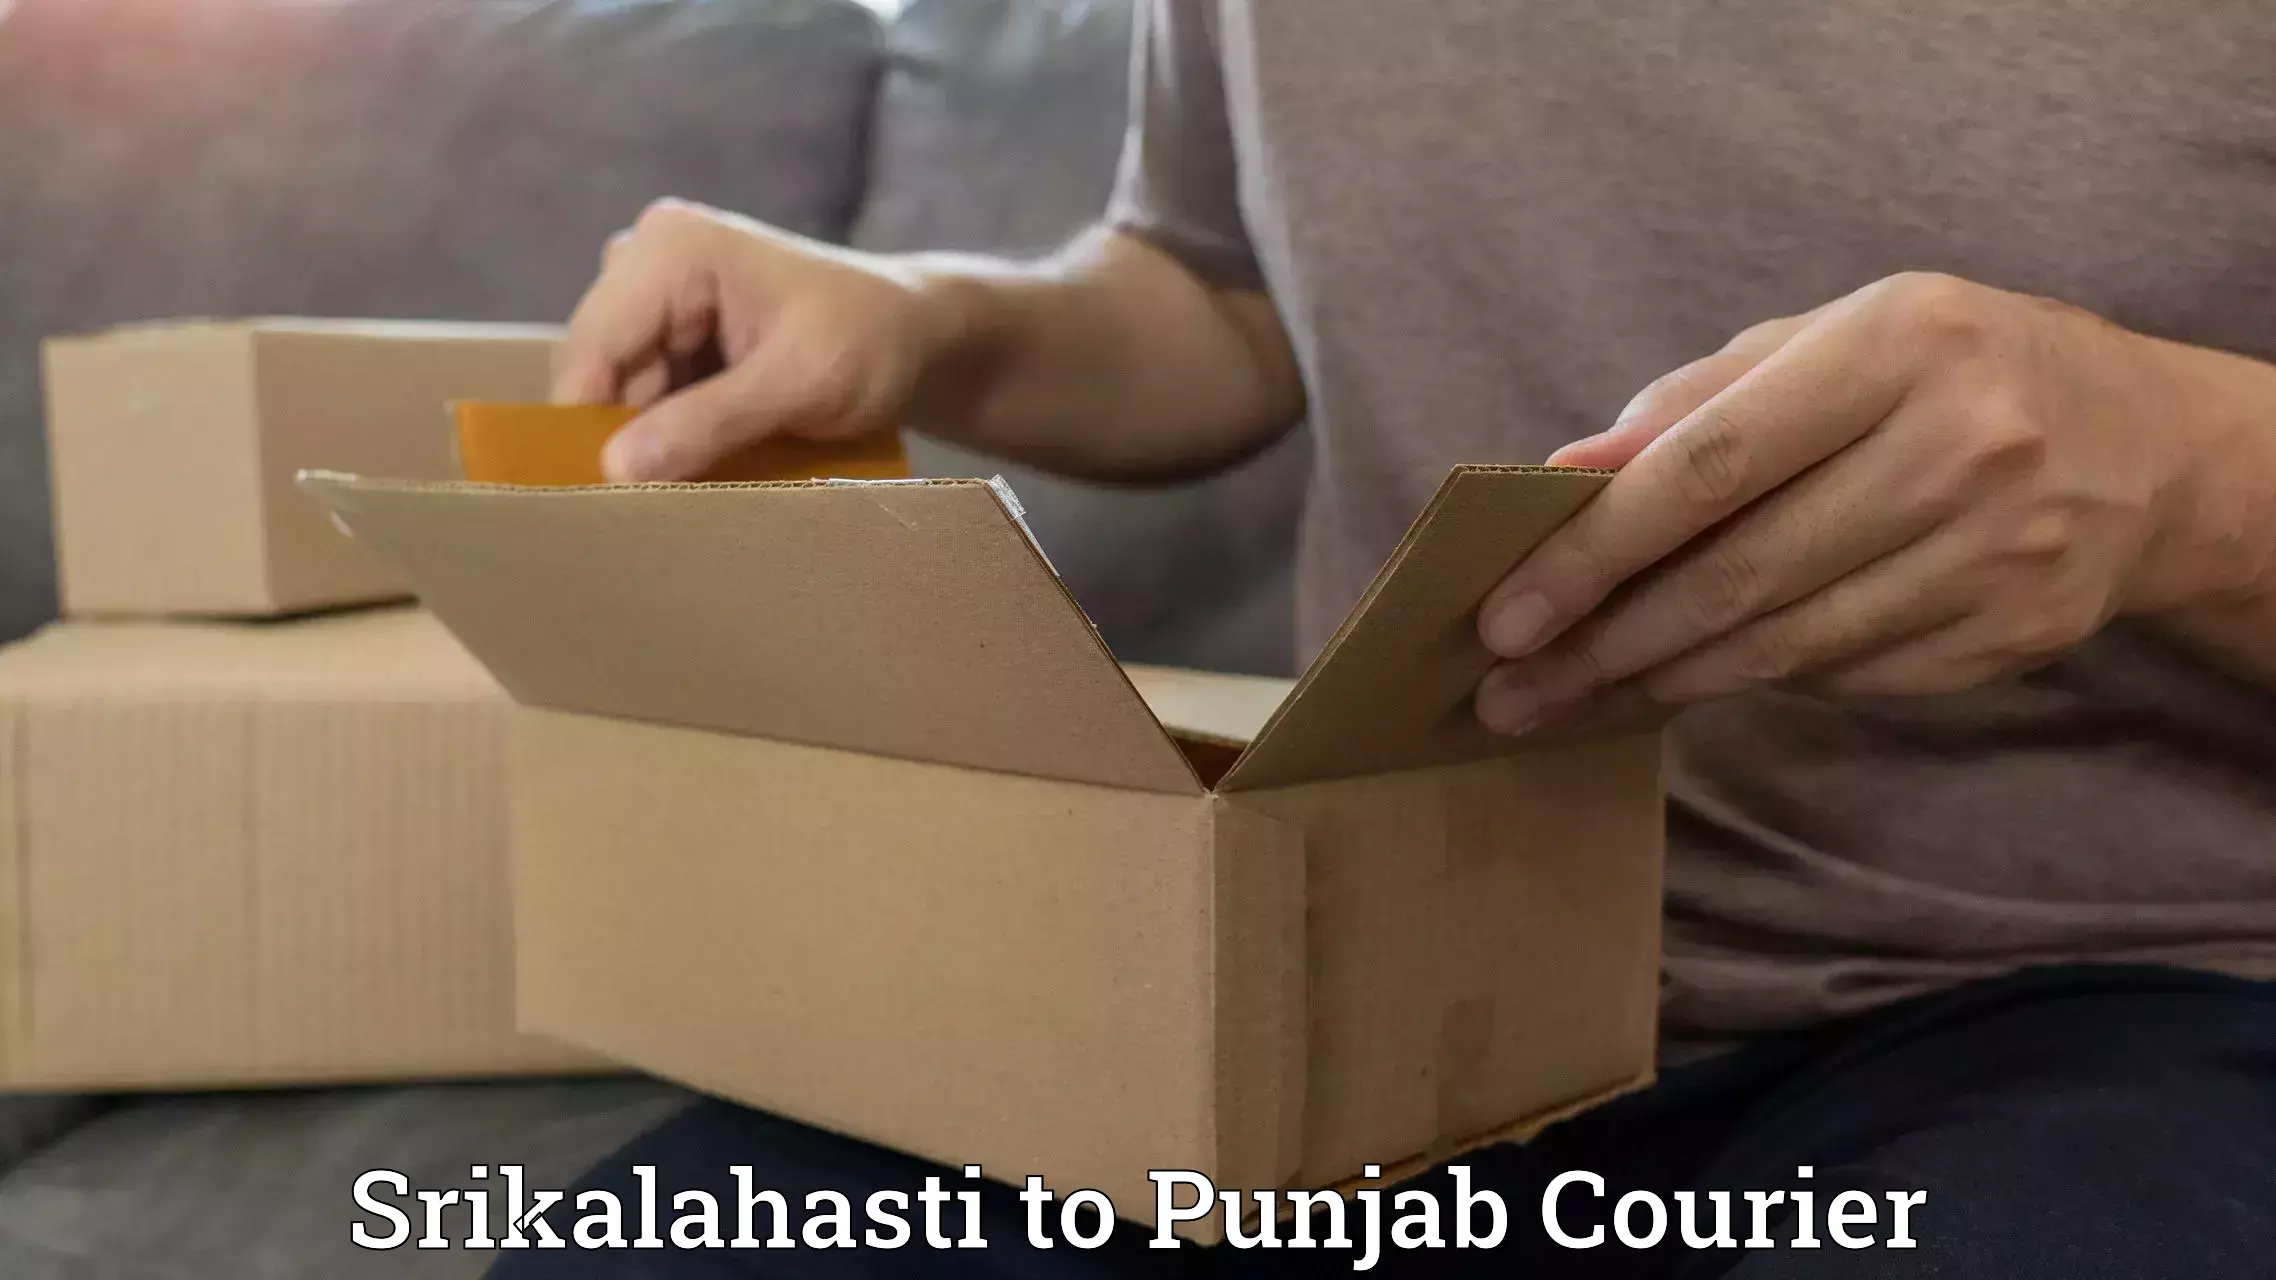 Courier app Srikalahasti to Central University of Punjab Bathinda